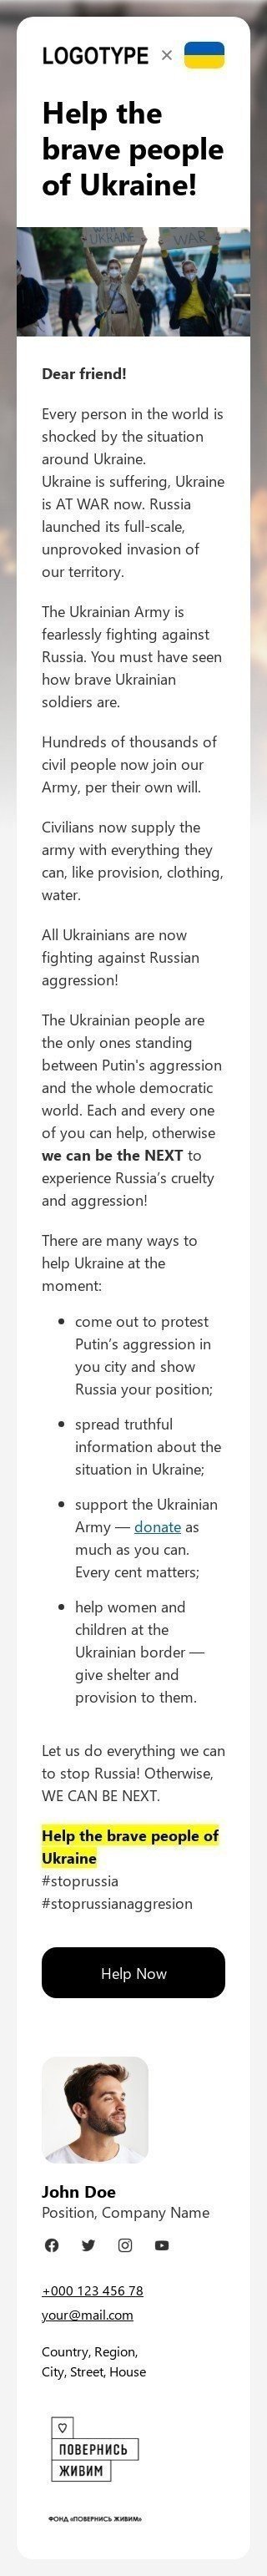 The "Spread the word to help Ukraine" email template Ansicht auf Mobilgeräten